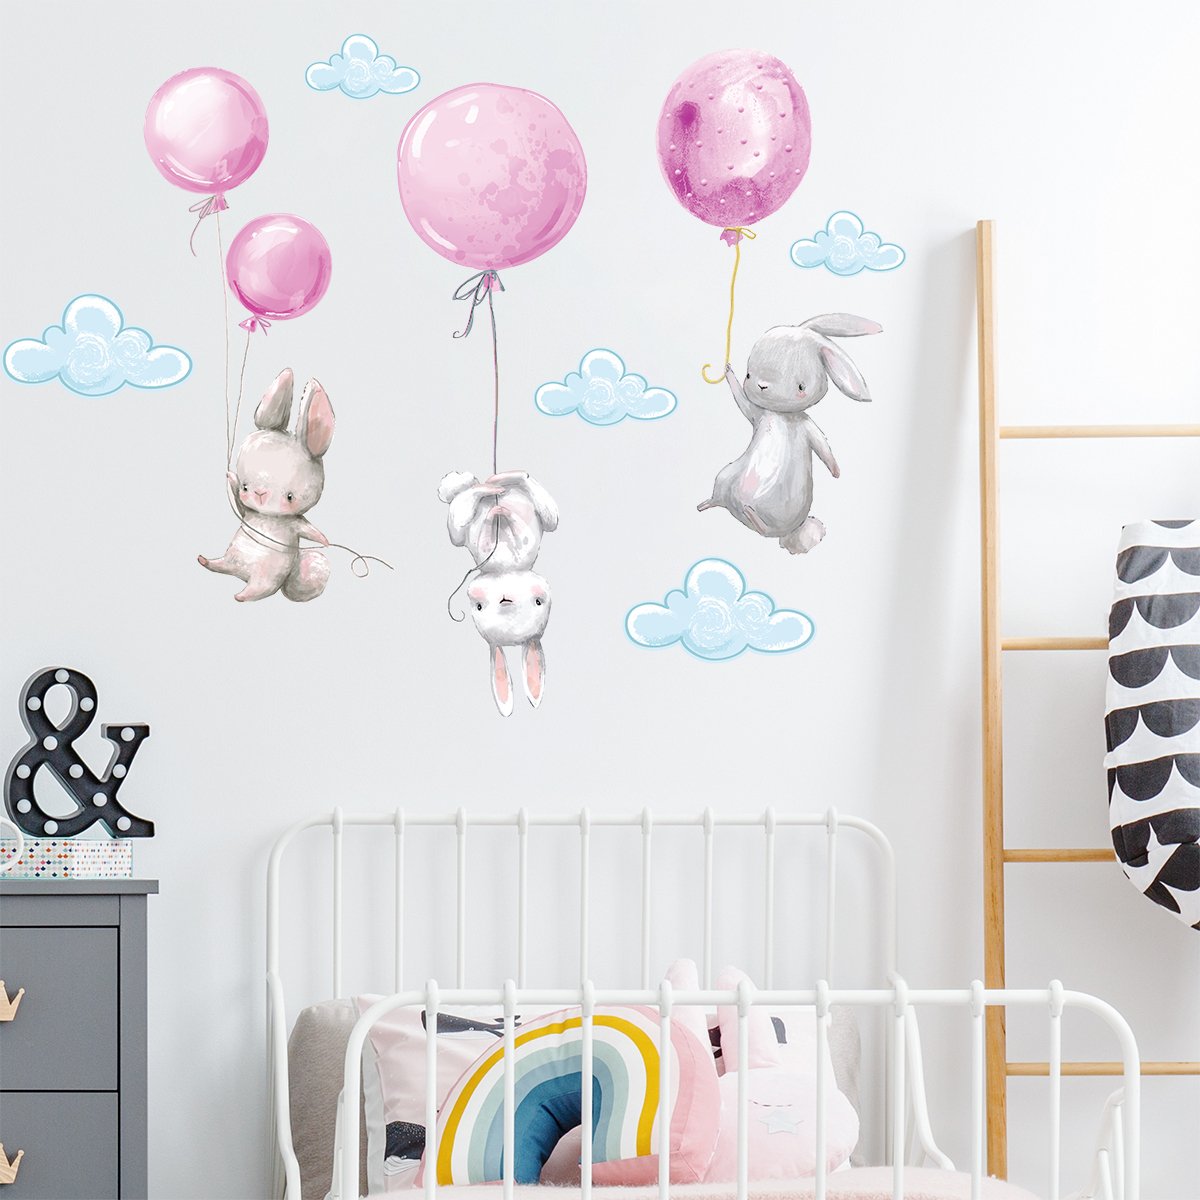 Naklejki króliki i latające balony na ścianę#kolor_rozowy